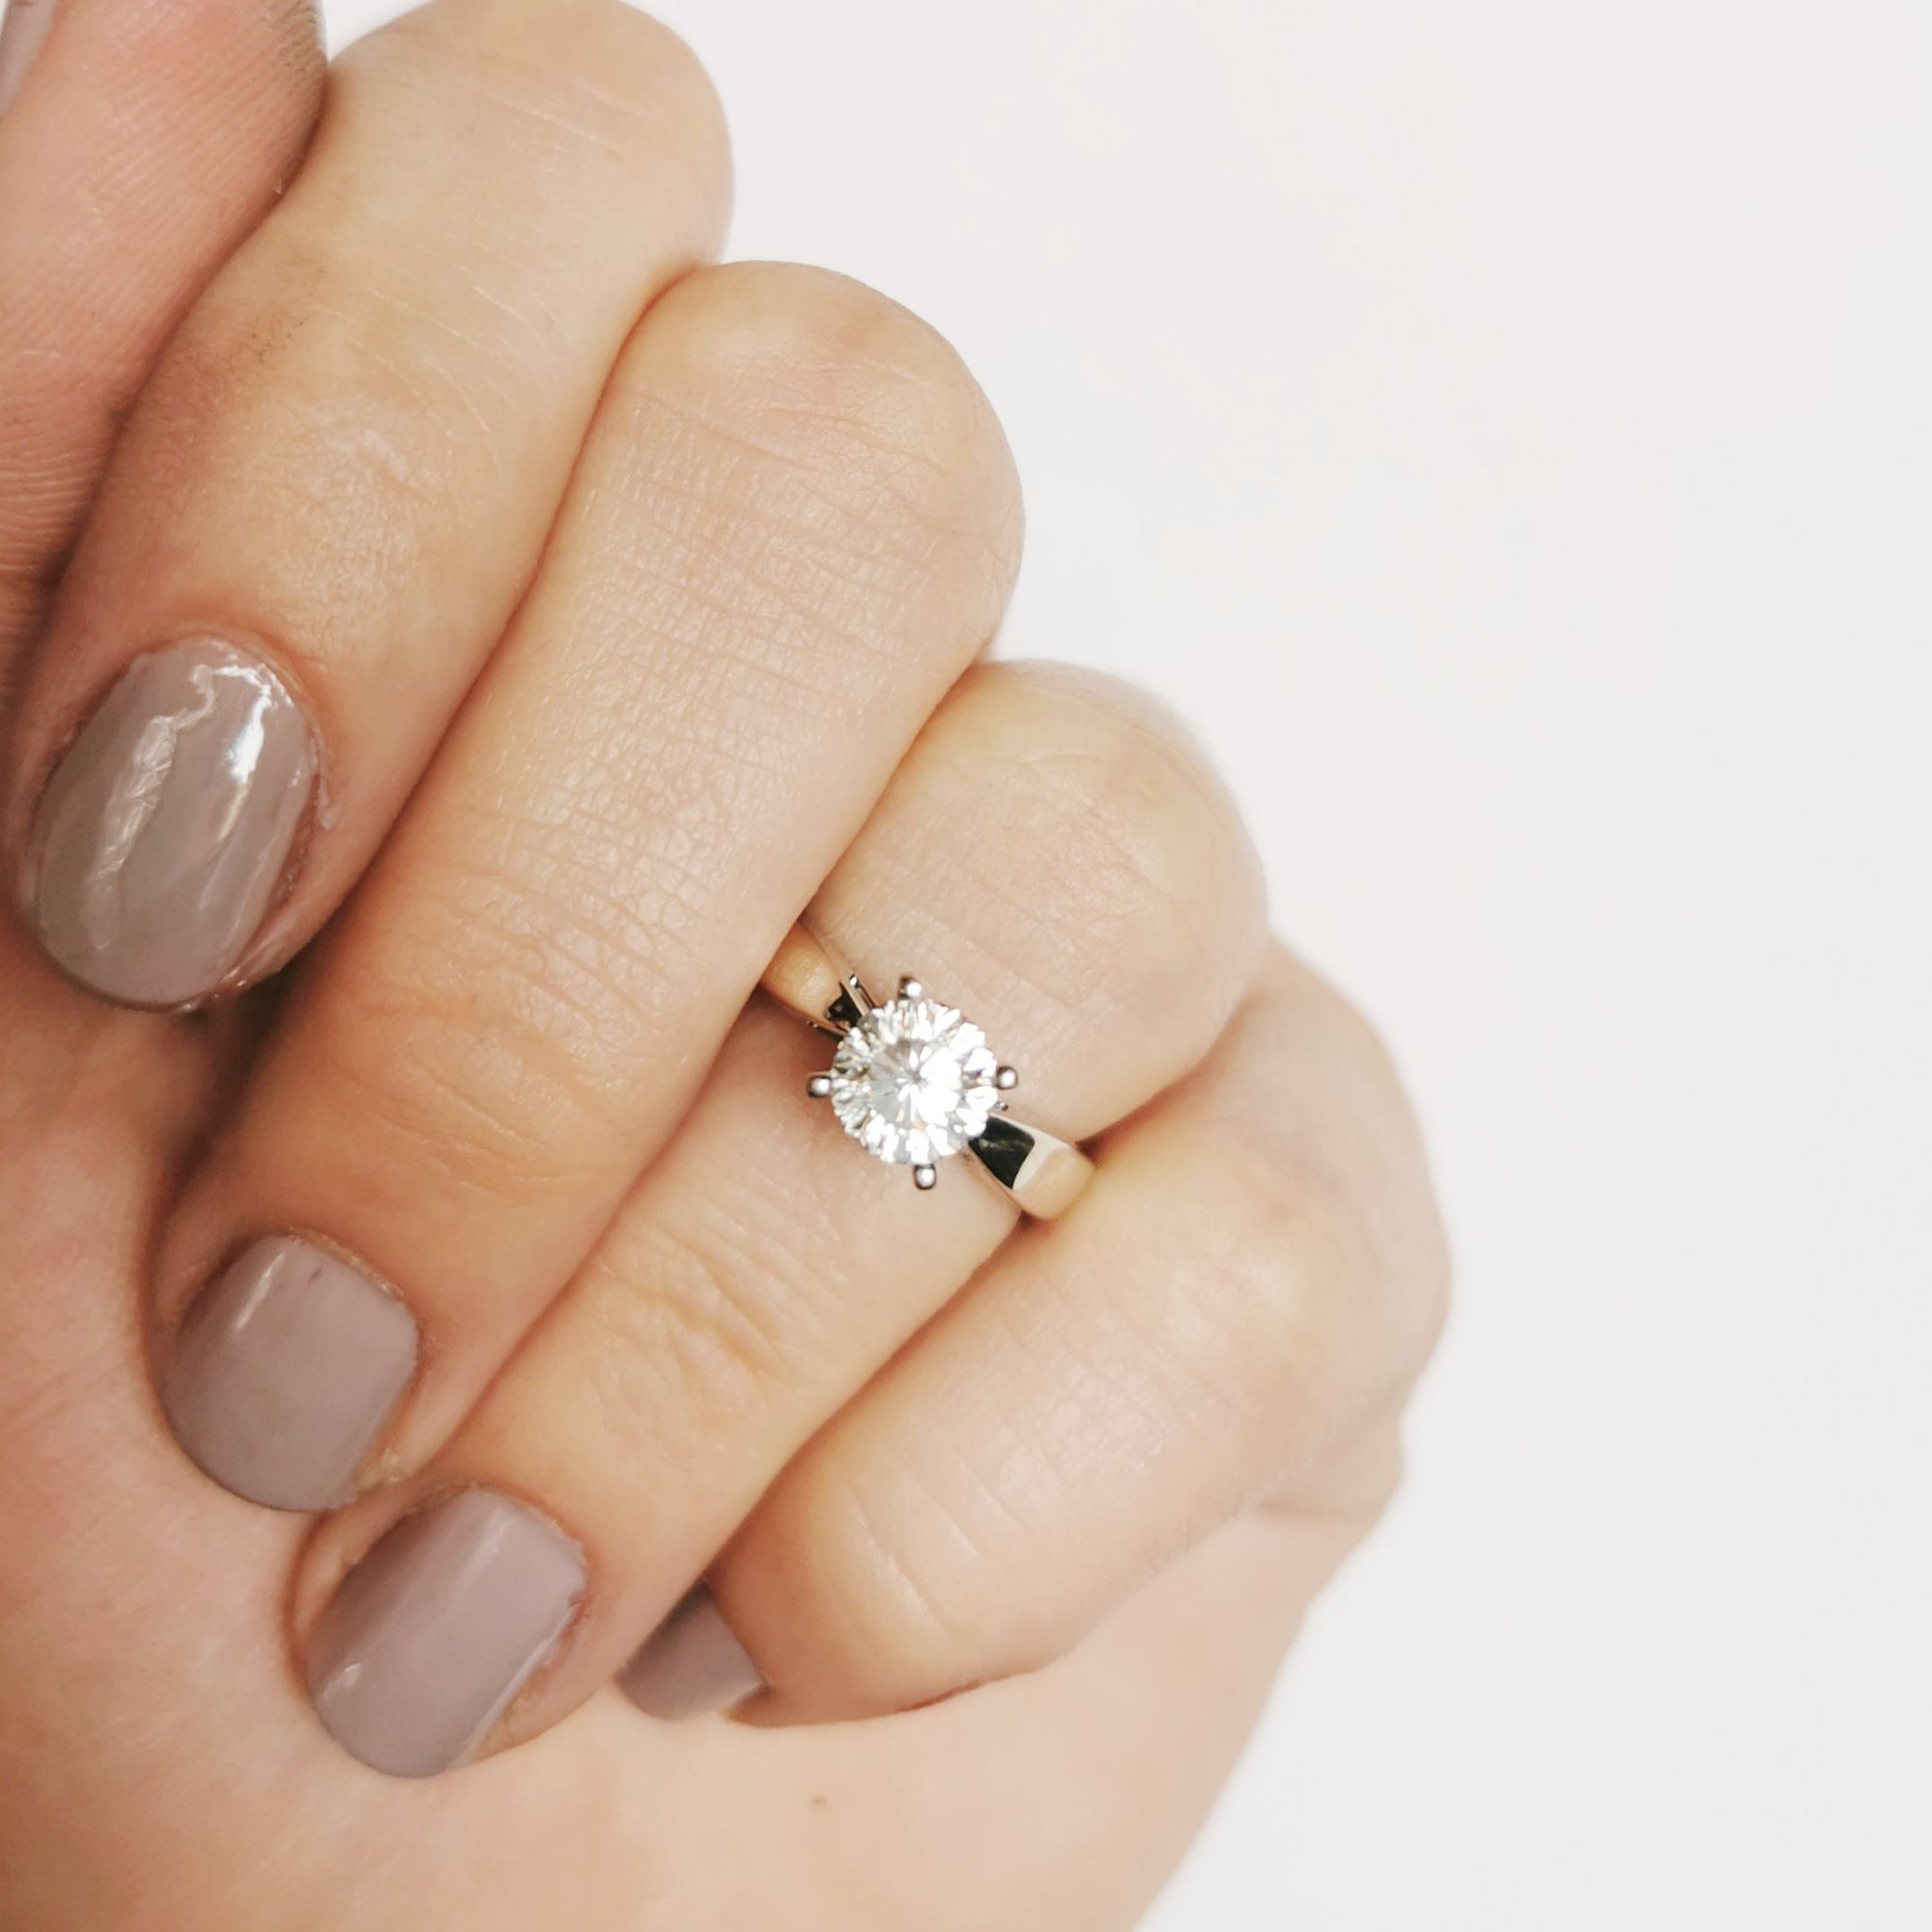 Canadian 100 Facet Round Brilliant Diamond Ring | 1.02ct | SI1, I | SZ 5 |